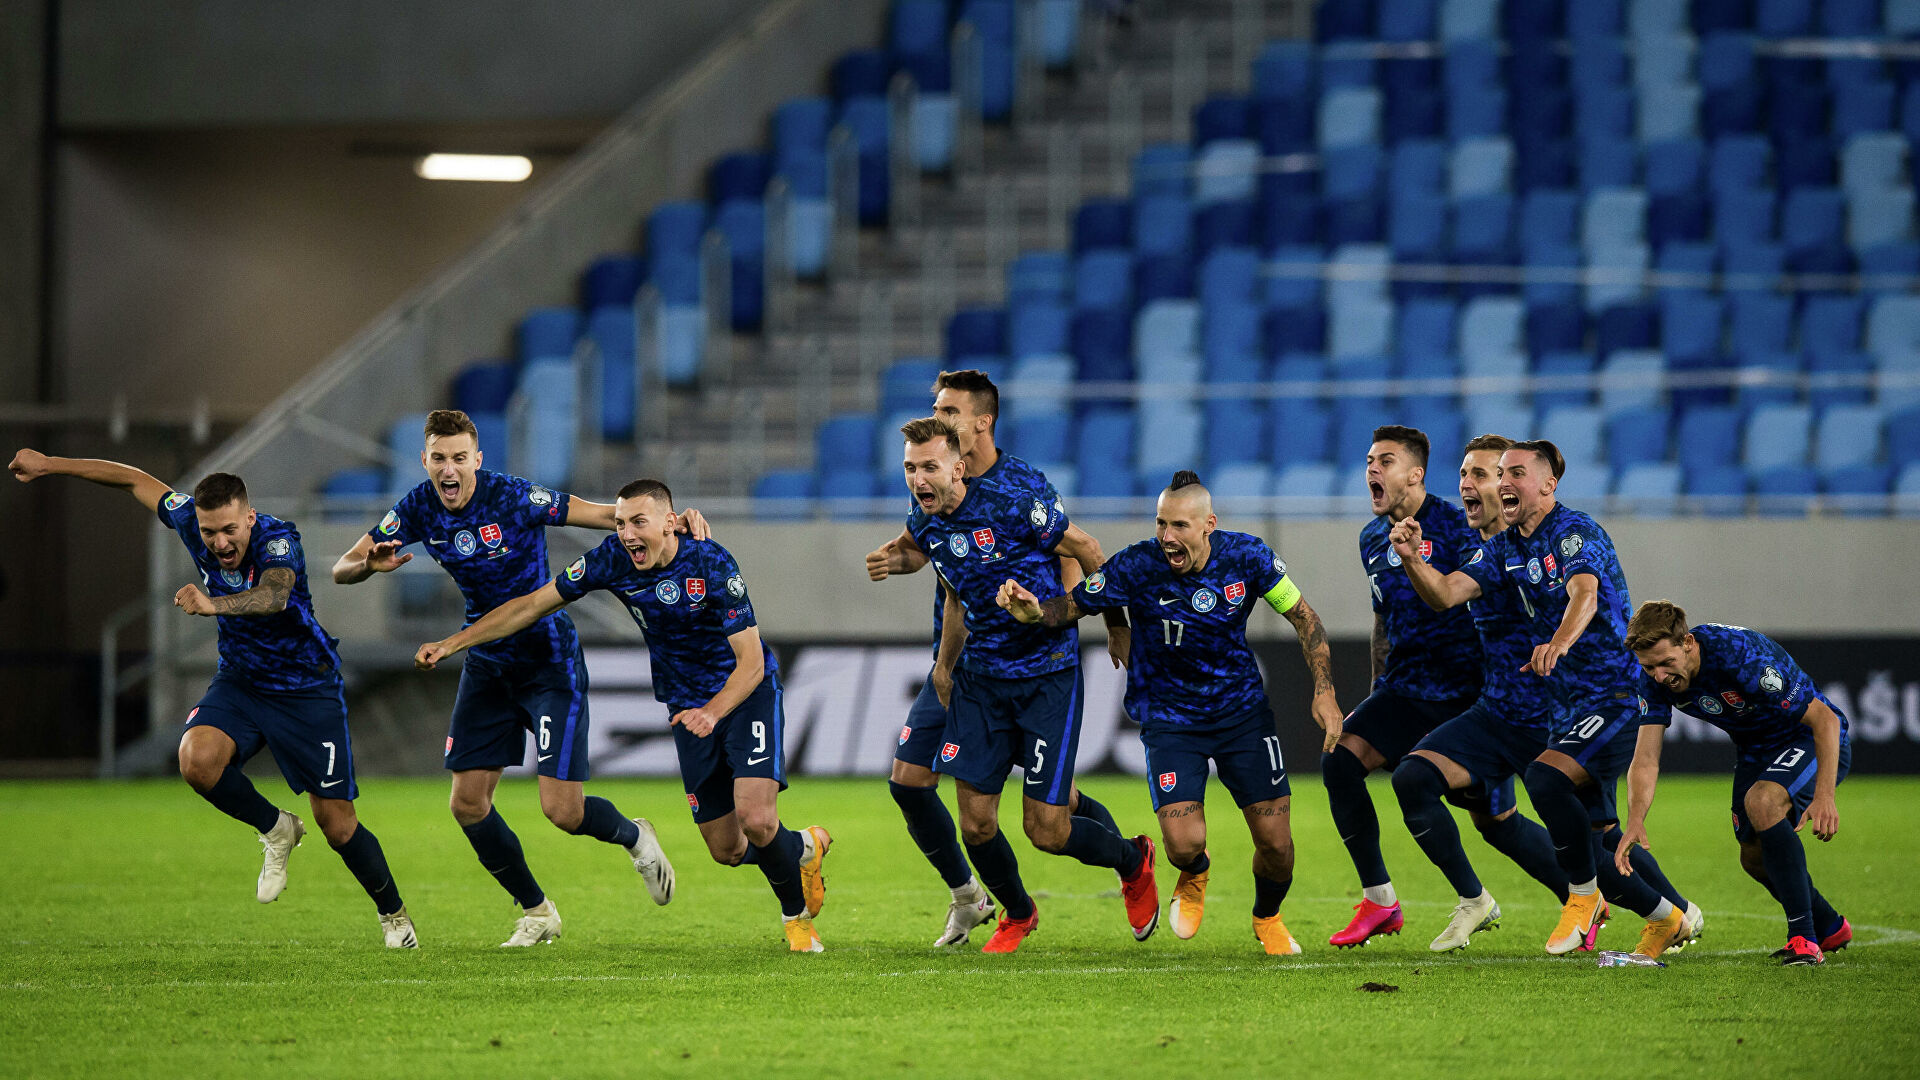 Словакия — Мальта прогноз 27 марта 2021: ставки и коэффициенты на матч отборочного турнира ЧМ-2022